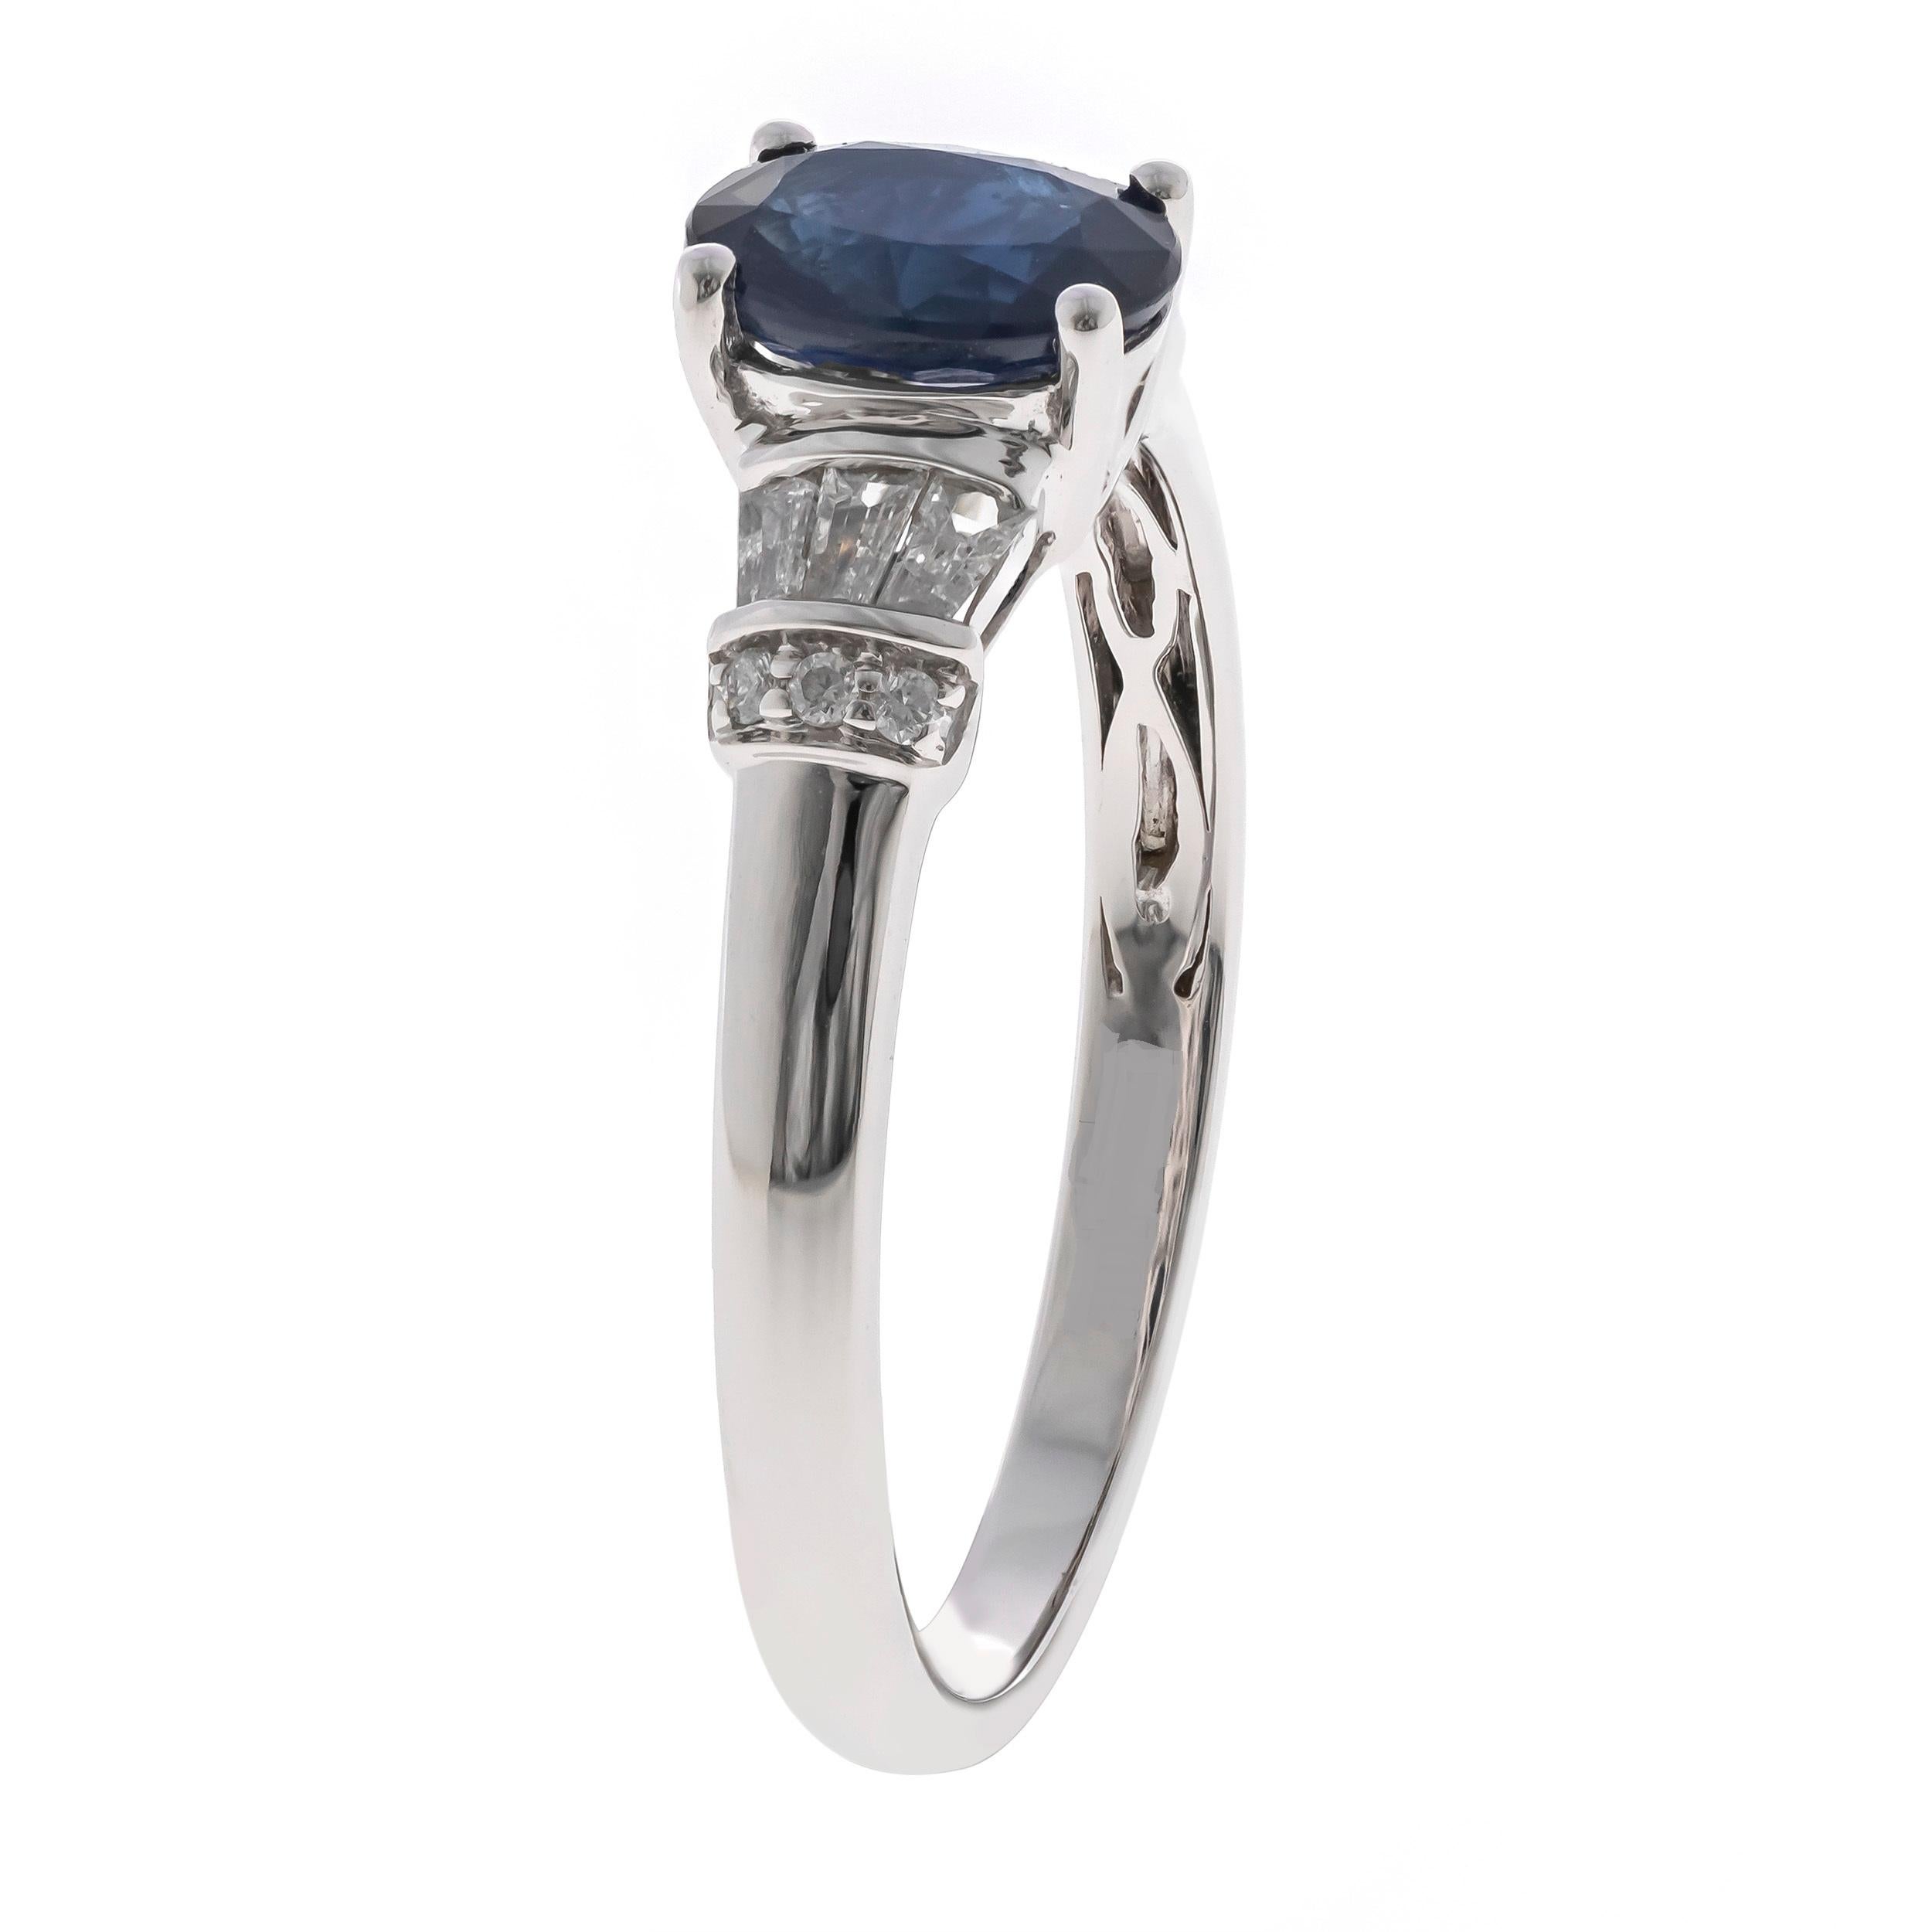 Schmücken Sie sich mit Eleganz mit diesem Ring aus 10-karätigem Weißgold von Gin & Grace. Dieser Ring besteht aus einem blauen Saphir im Ovalschliff (1 Stück) mit 0,94 Karat und einem weißen Diamanten im Rundschliff (6 Stück) mit 0,03 Karat sowie